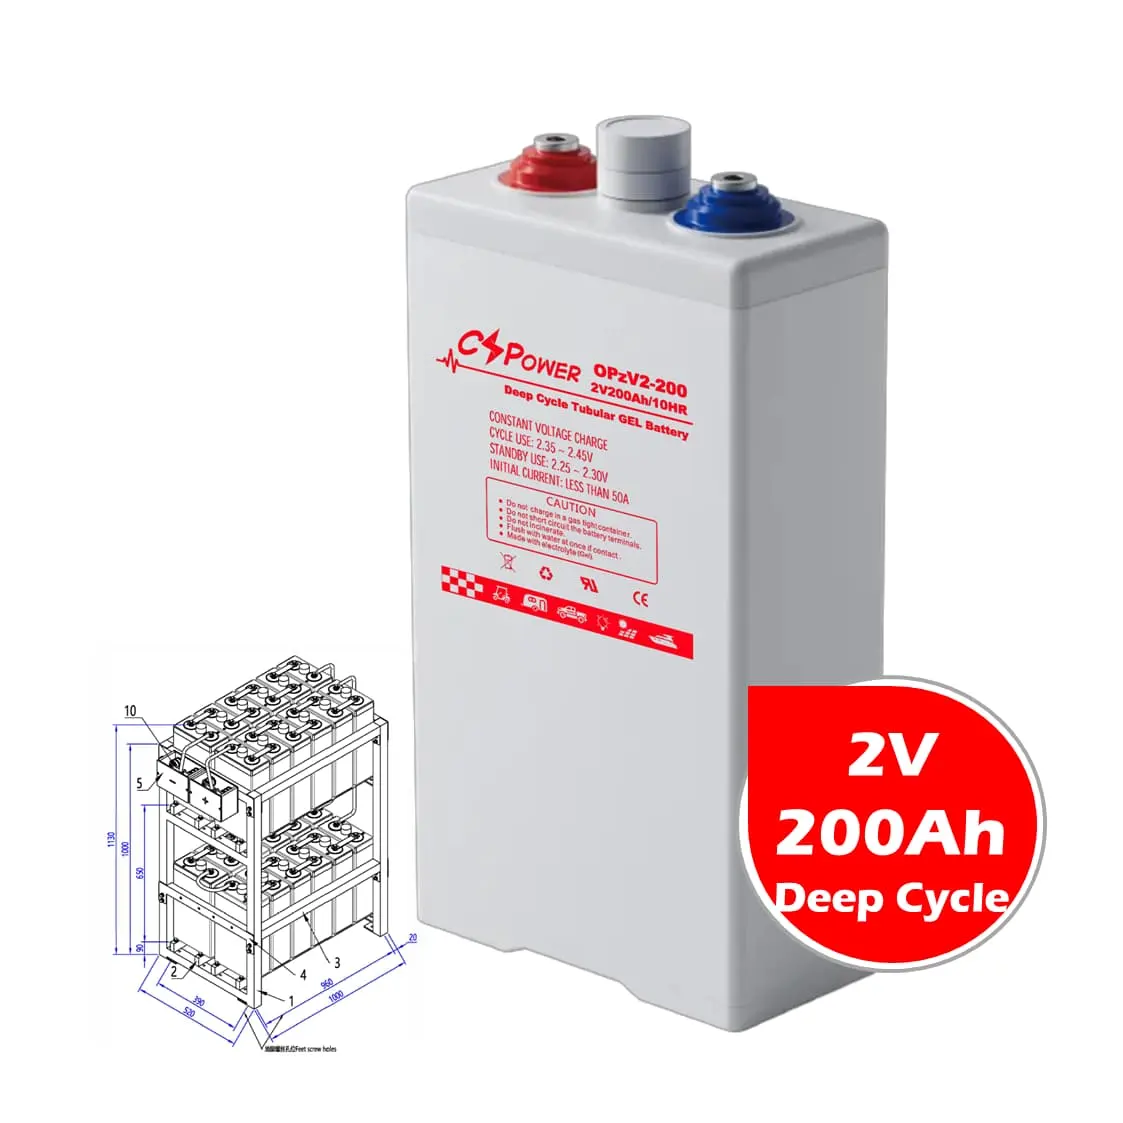 CSPower 2V 200Ah energia solar bateria Tubular gel opzV bateria para painel solar preço de fábrica OPzV2-200 4OPzV200 QUALQUER